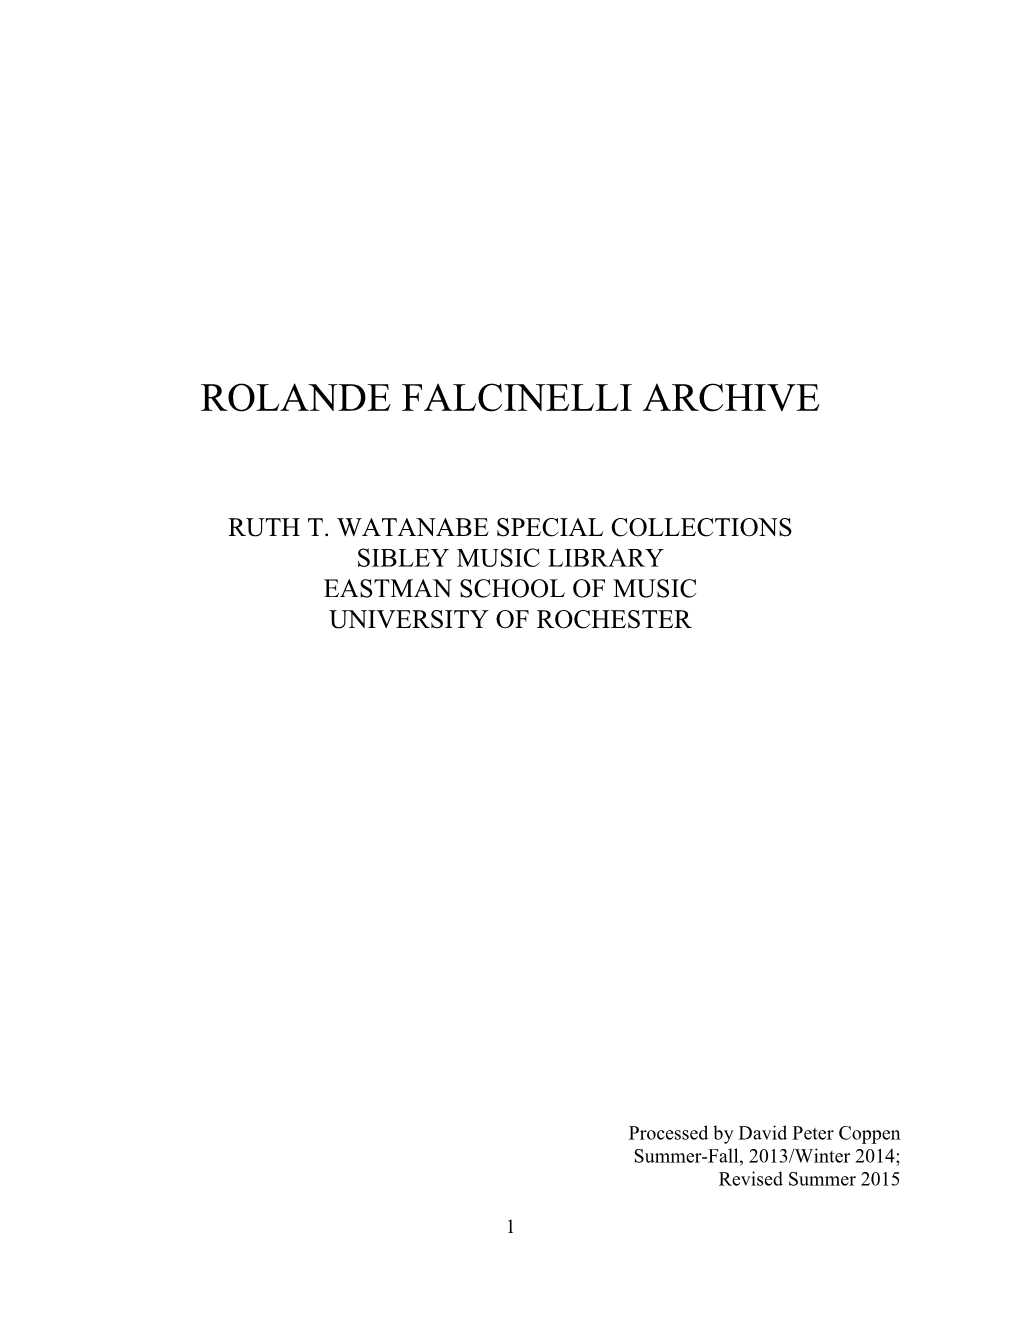 Rolande Falcinelli Archive